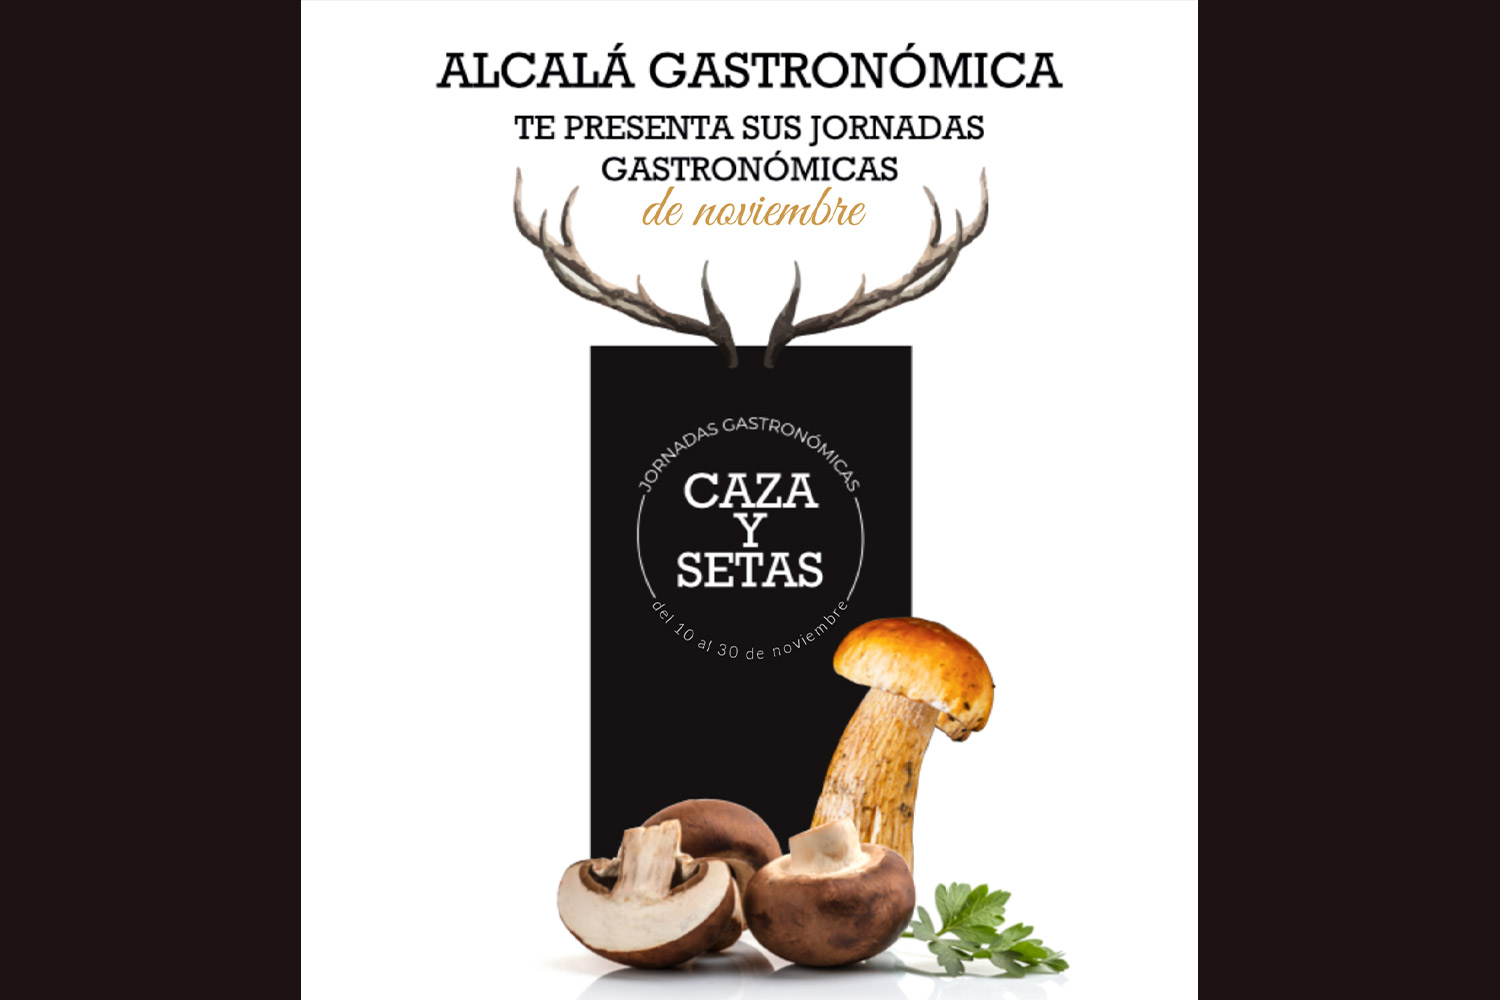 Cartel Jornadas Gastronómicas “Caza y Setas” en Alcalá de Henares